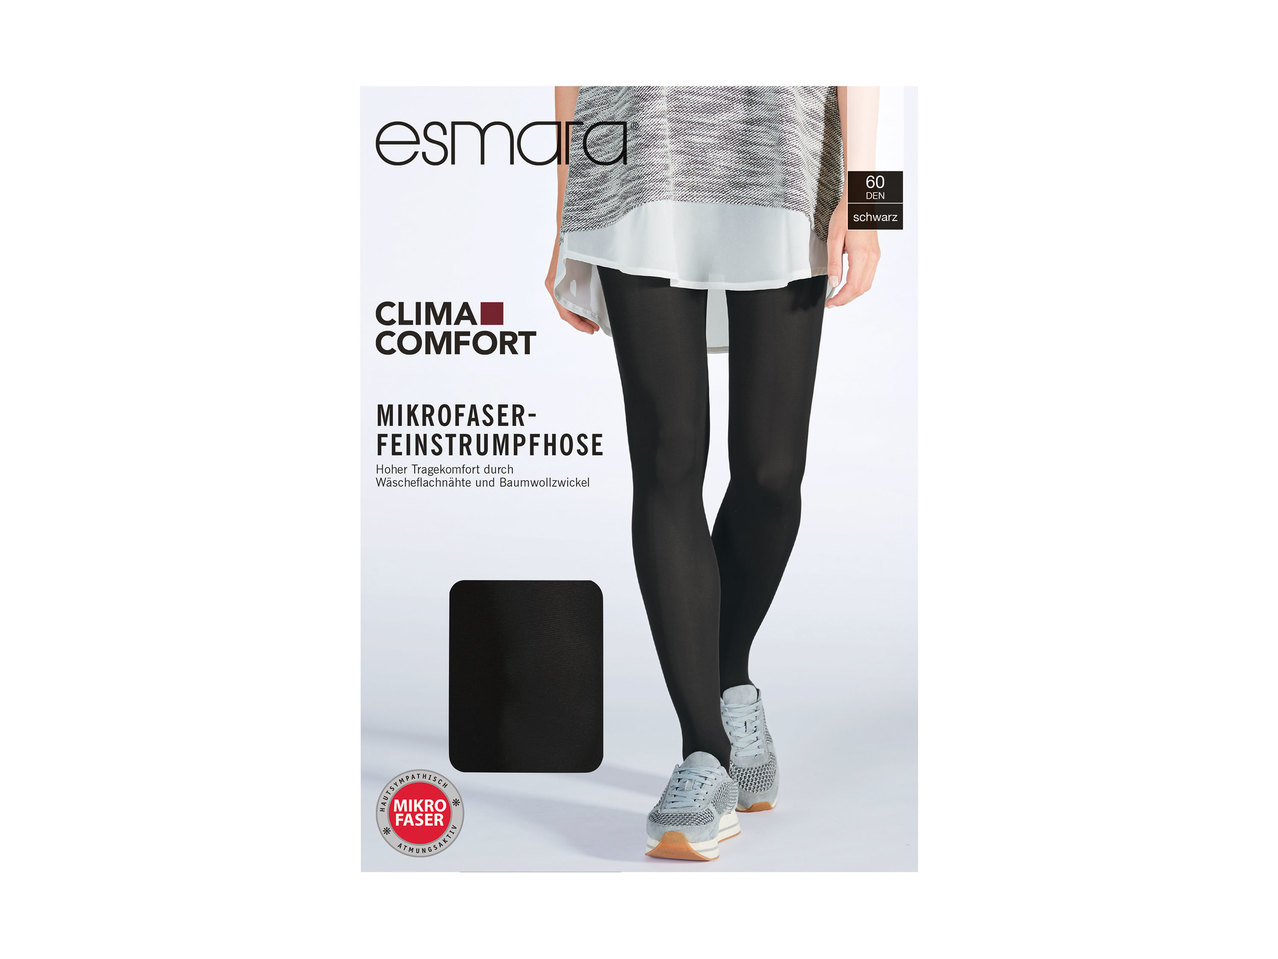 Esmara 60 DEN Ladies' Microfibre Tights or Knee-Highs1